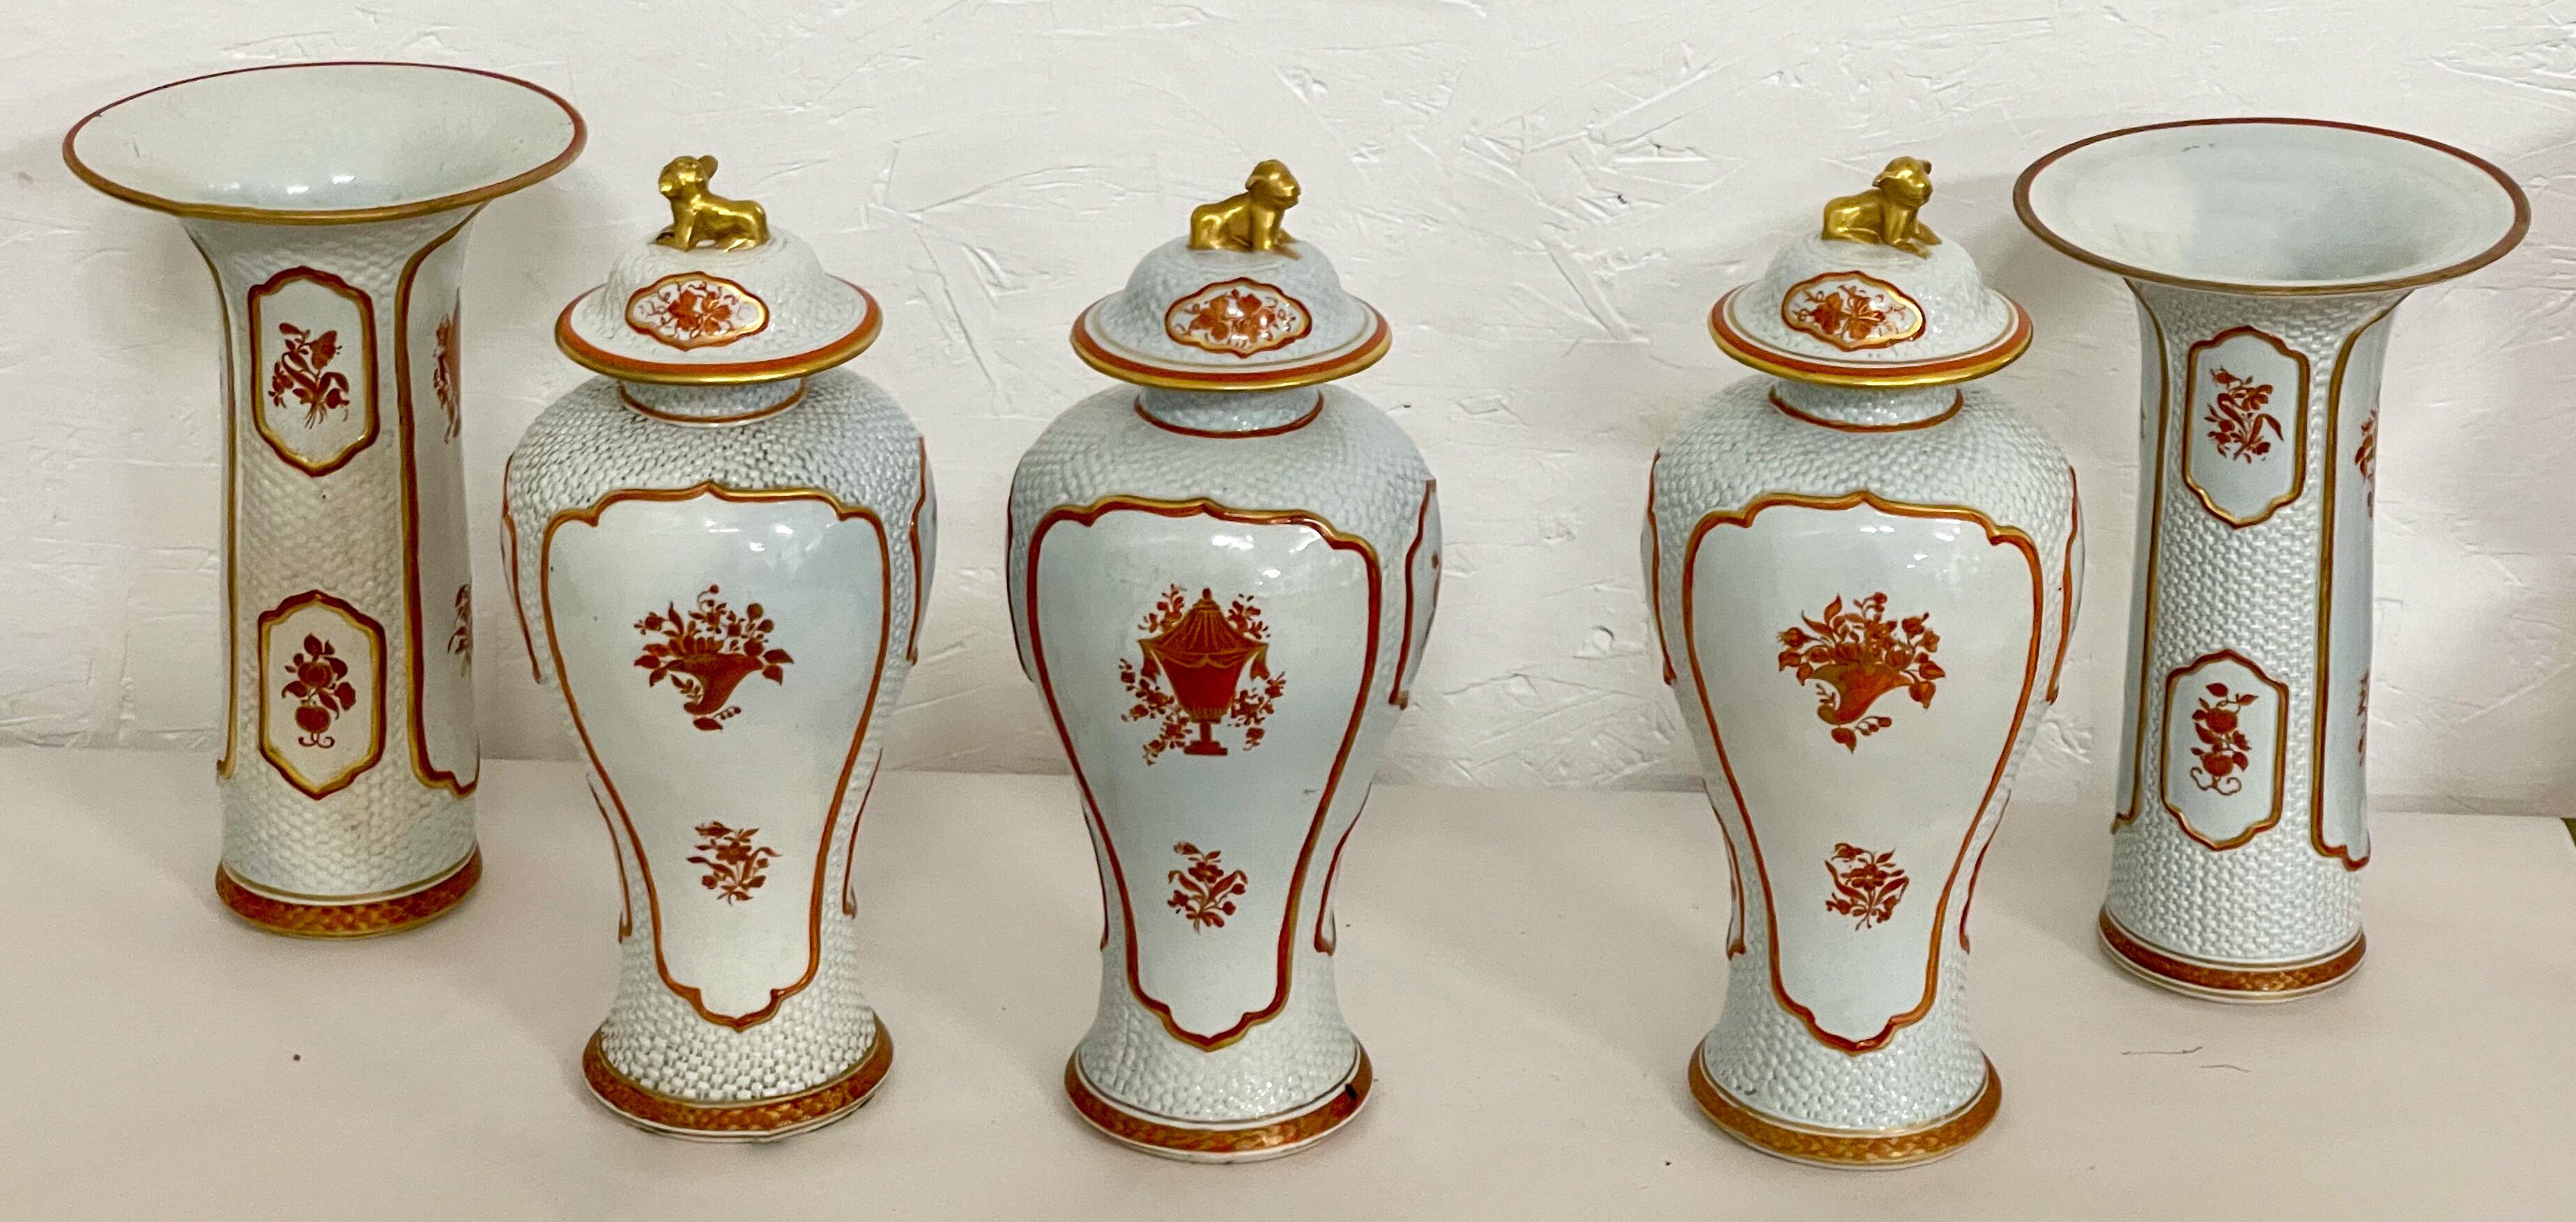 Cet ensemble de garniture armoriée d'inspiration asiatique comprend deux vases et trois pots à gingembre. Ils ont une coloration vibrante dans le corail et le doré. L'ensemble est marqué.